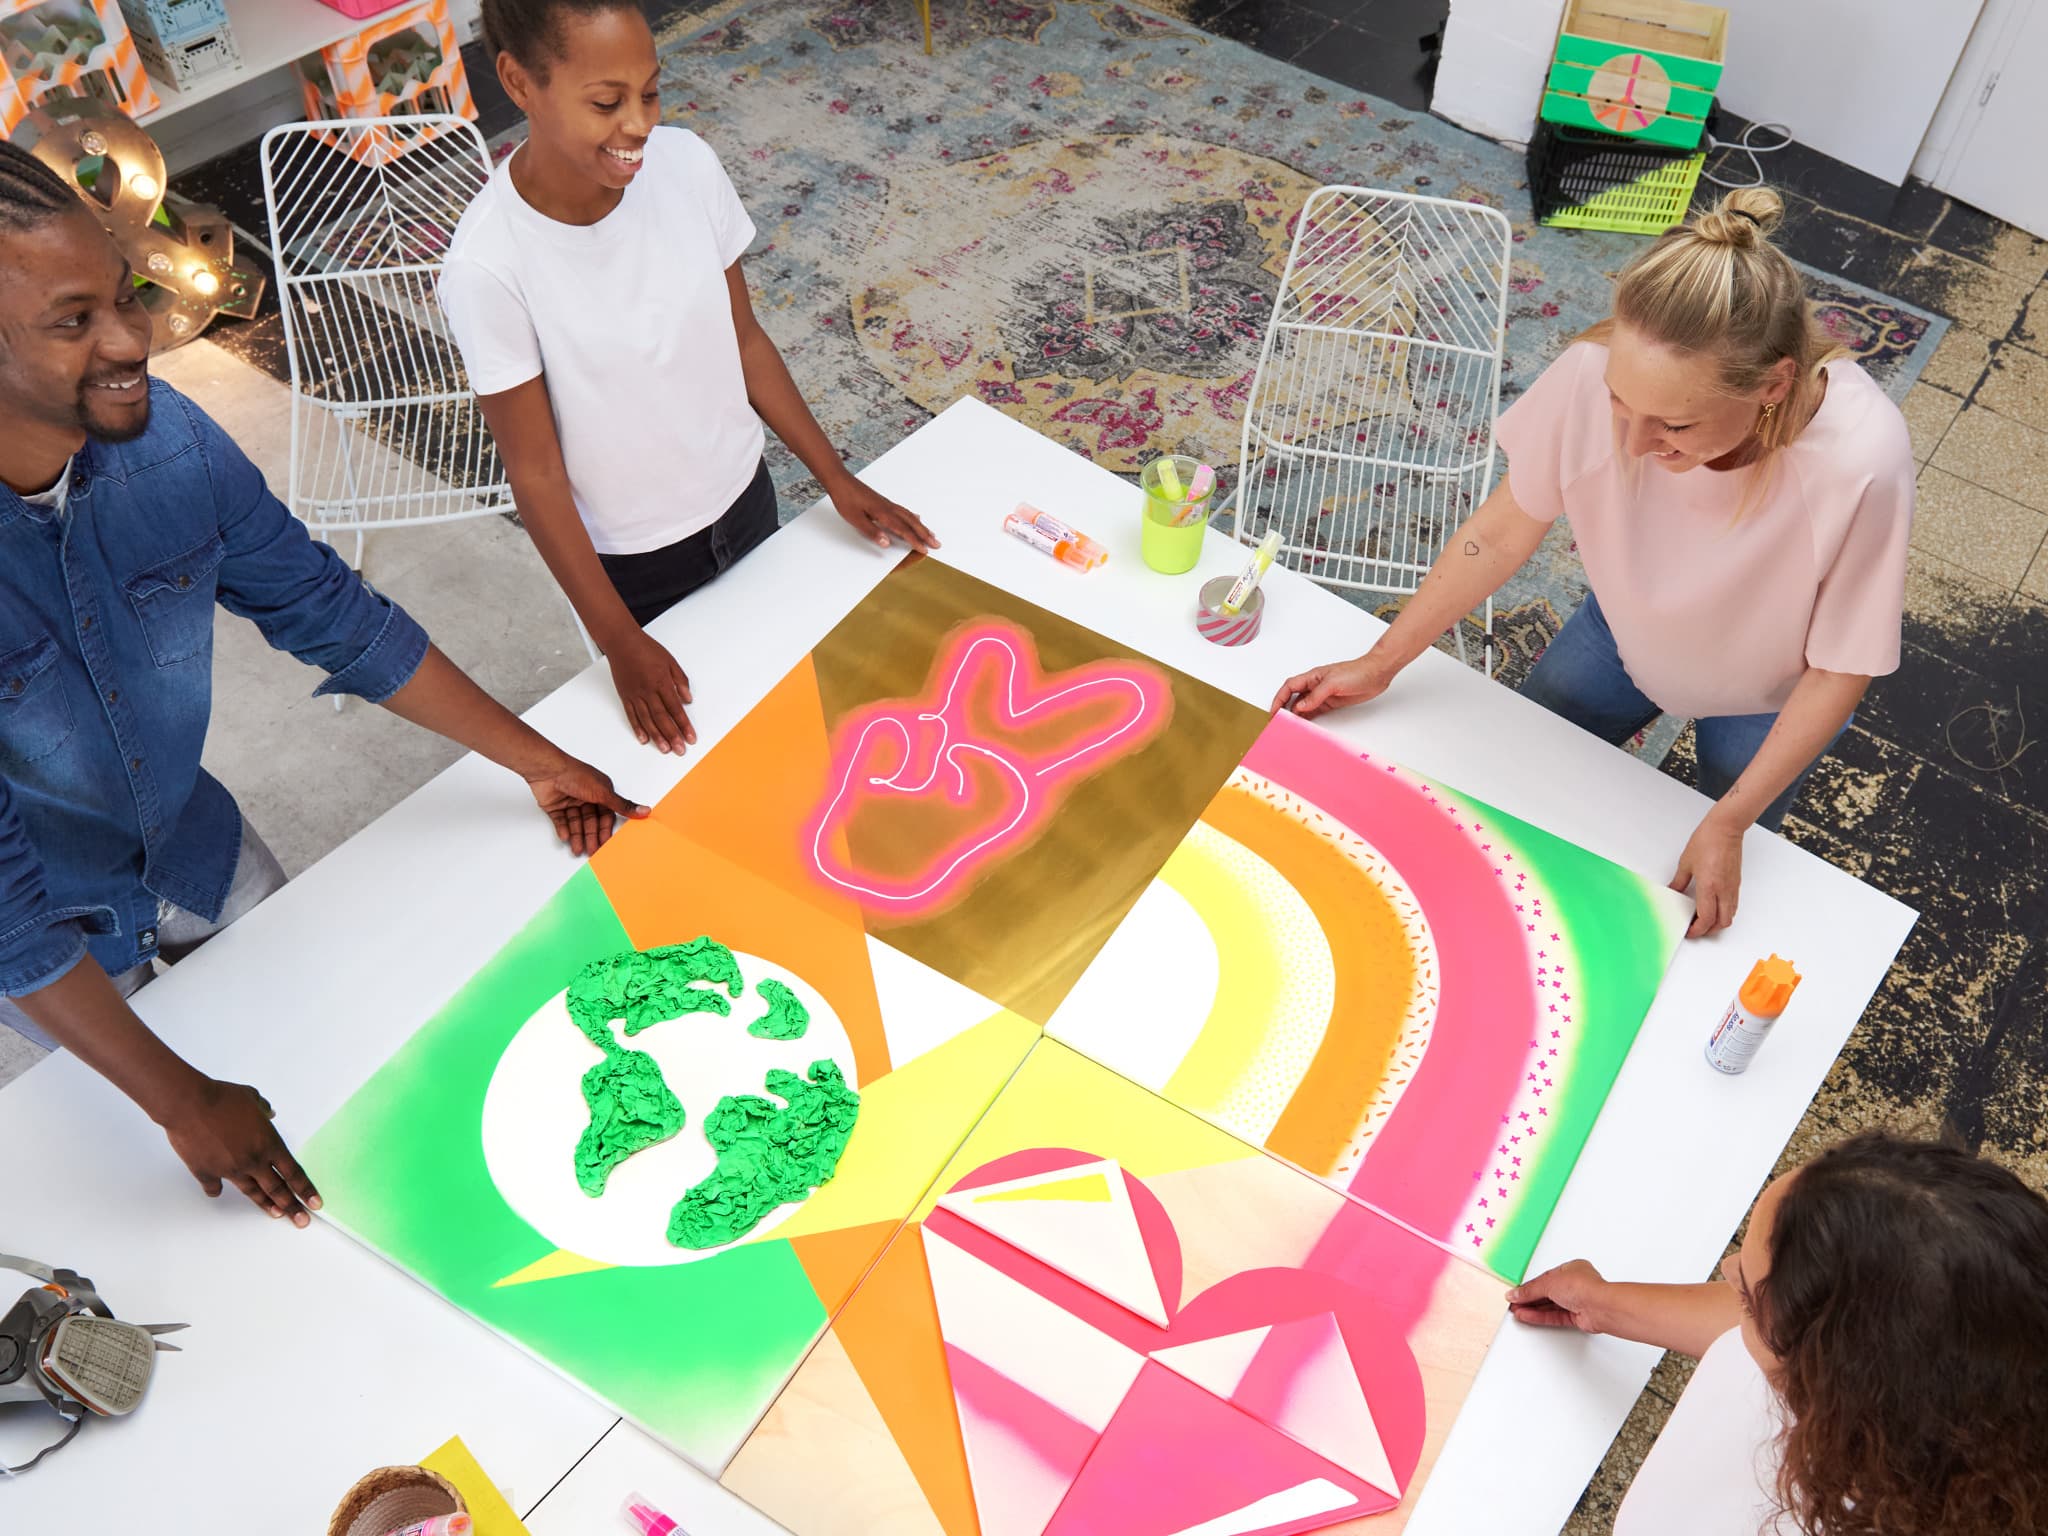 Eine Gruppe kreativer Personen arbeitet in einem hellen, künstlerischen Arbeitsbereich gemeinsam an einem farbenfrohen geometrischen Kunstprojekt mit edding 5200 Permanentspray Acryllack Neon & Kräftige Farben.